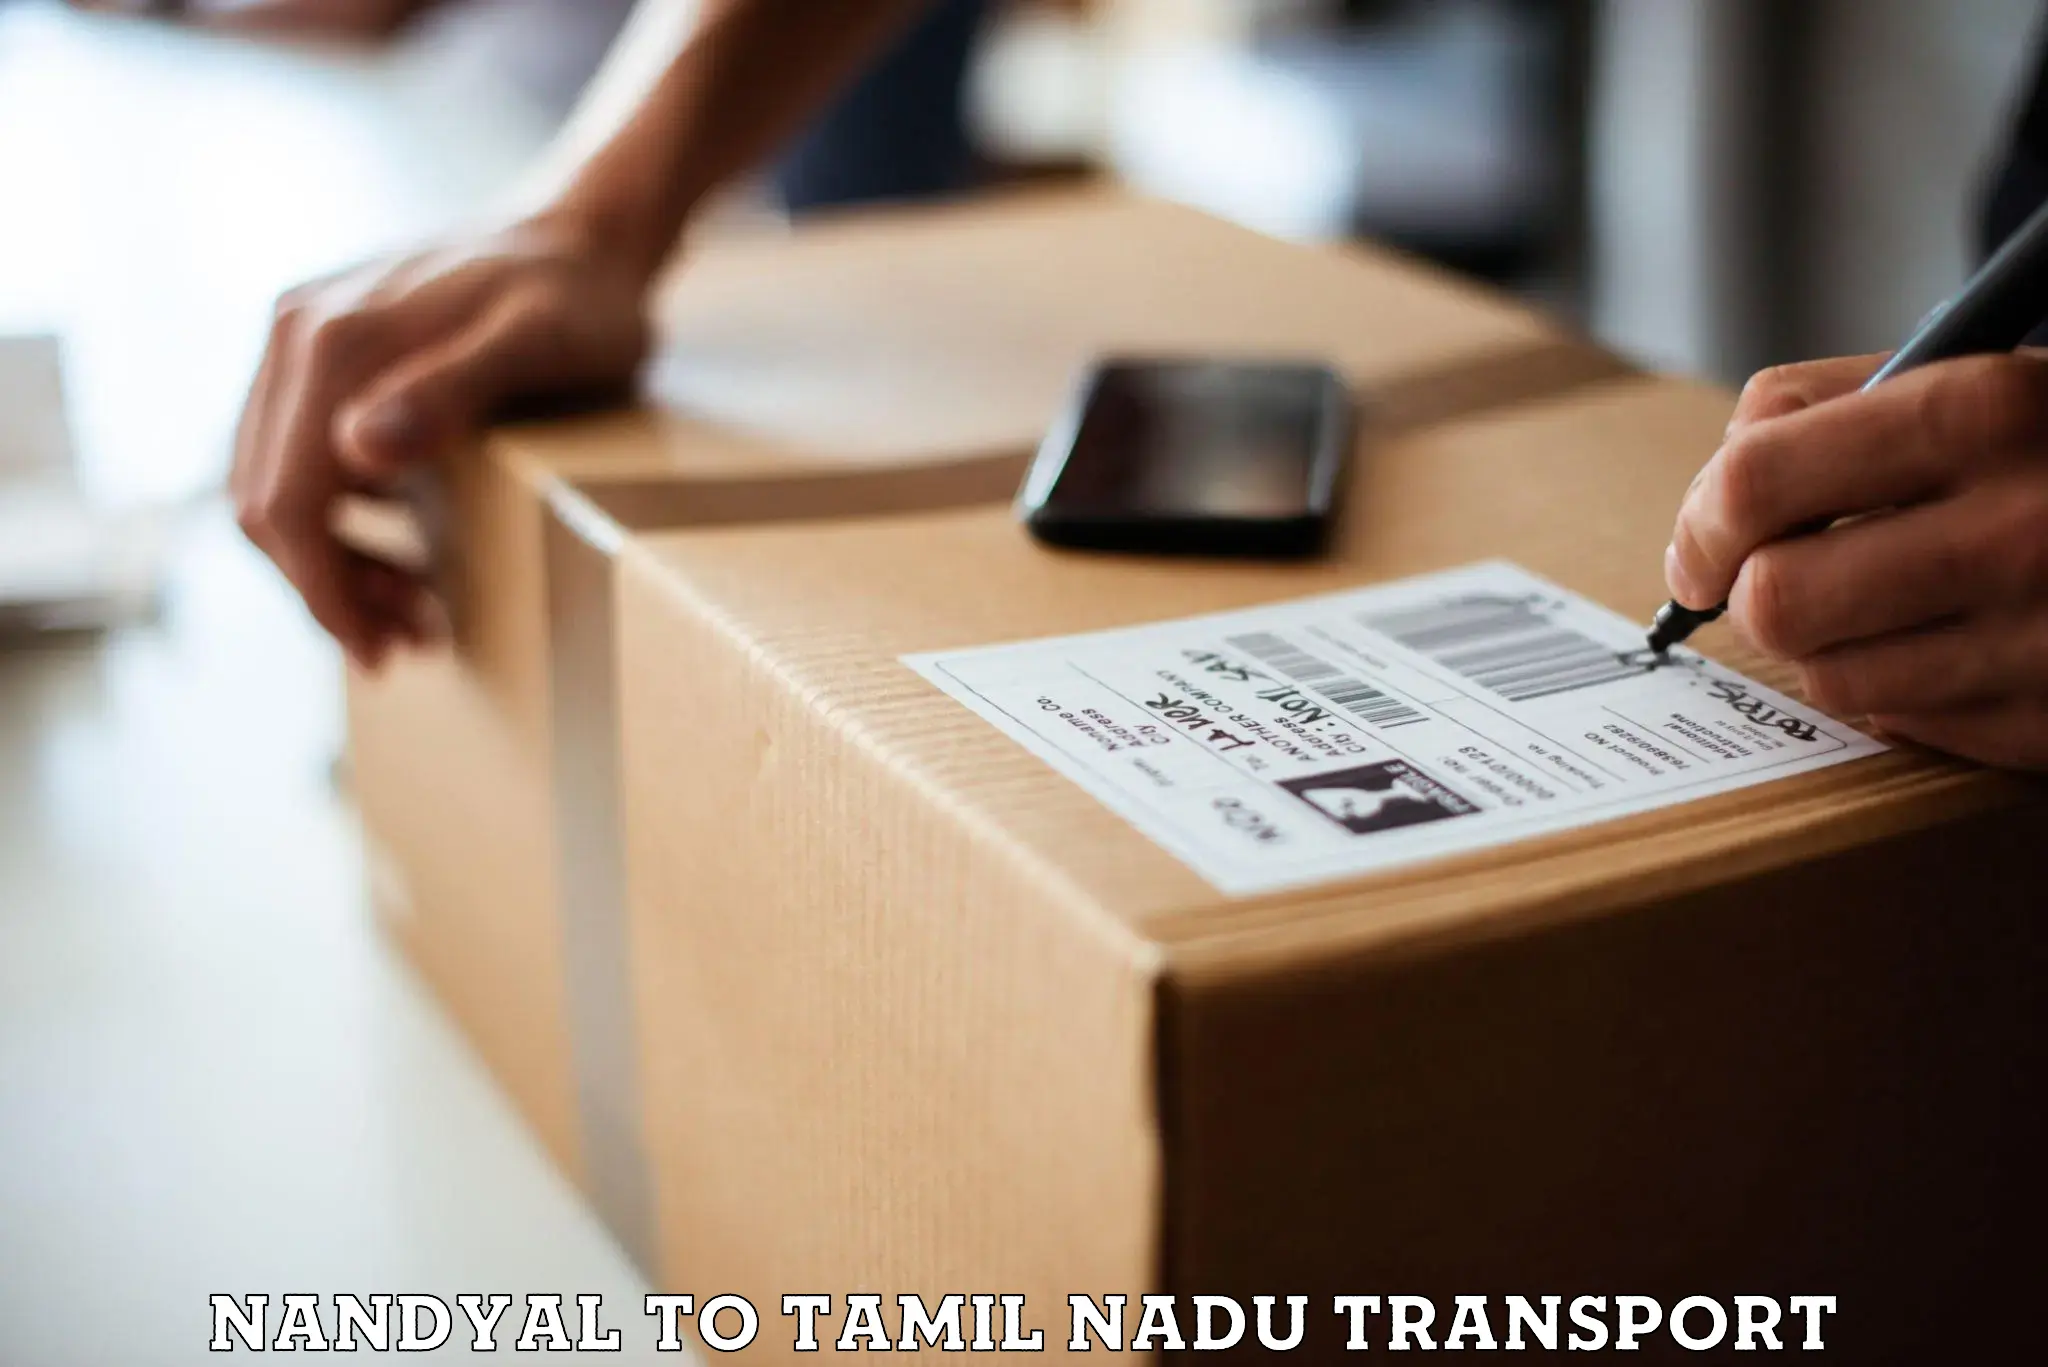 Daily parcel service transport Nandyal to Vickramasingapuram